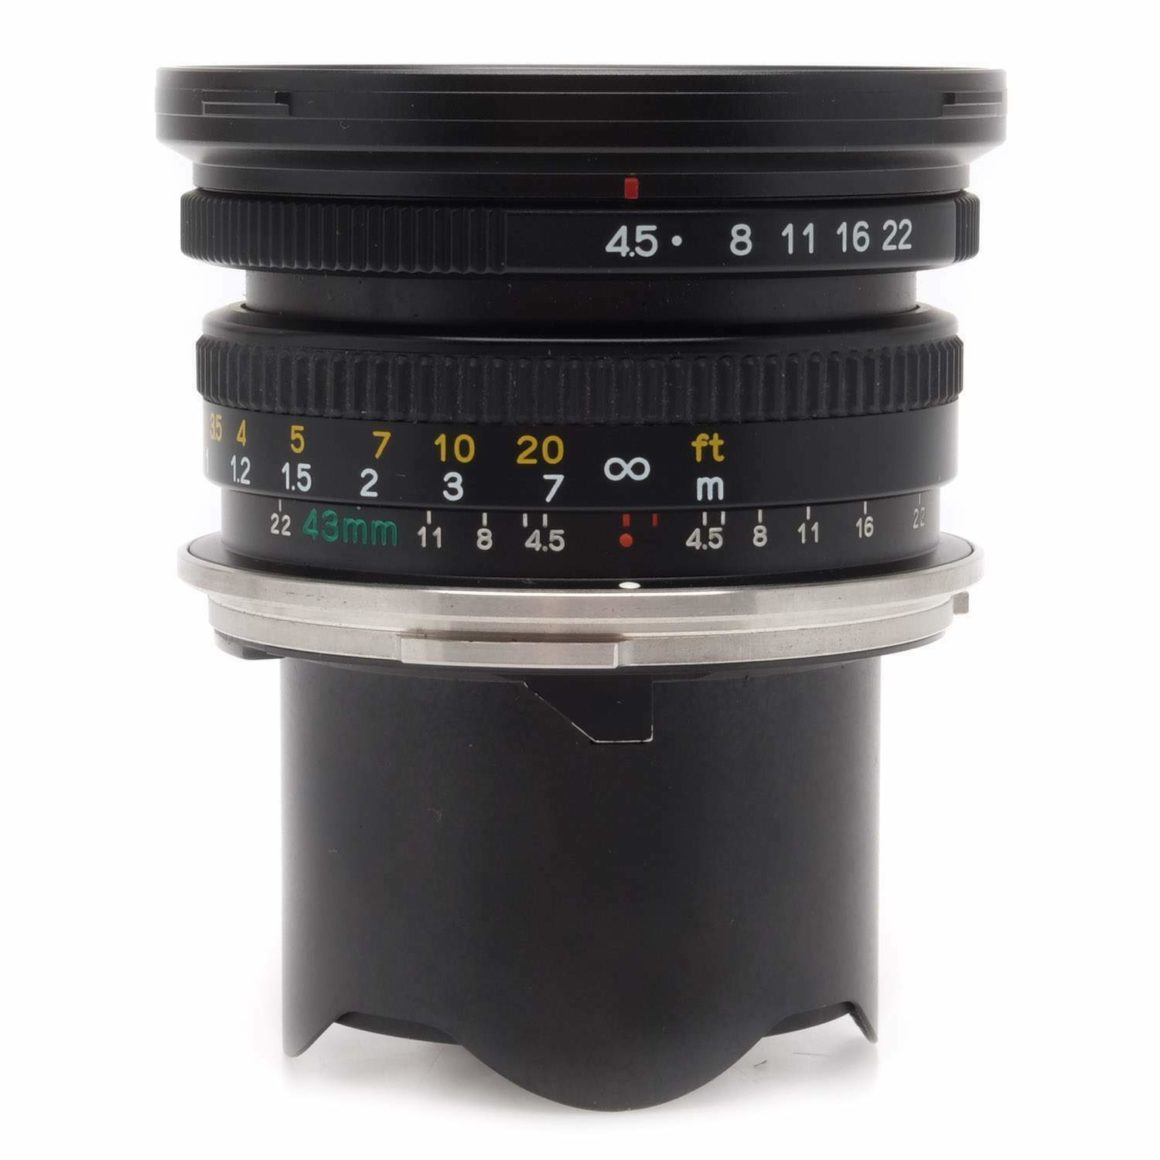 Mamiya 7 Rear Lens Cap for 43mm f/4.5 50mm f/4.5 & 65mm f/4 Lenses 